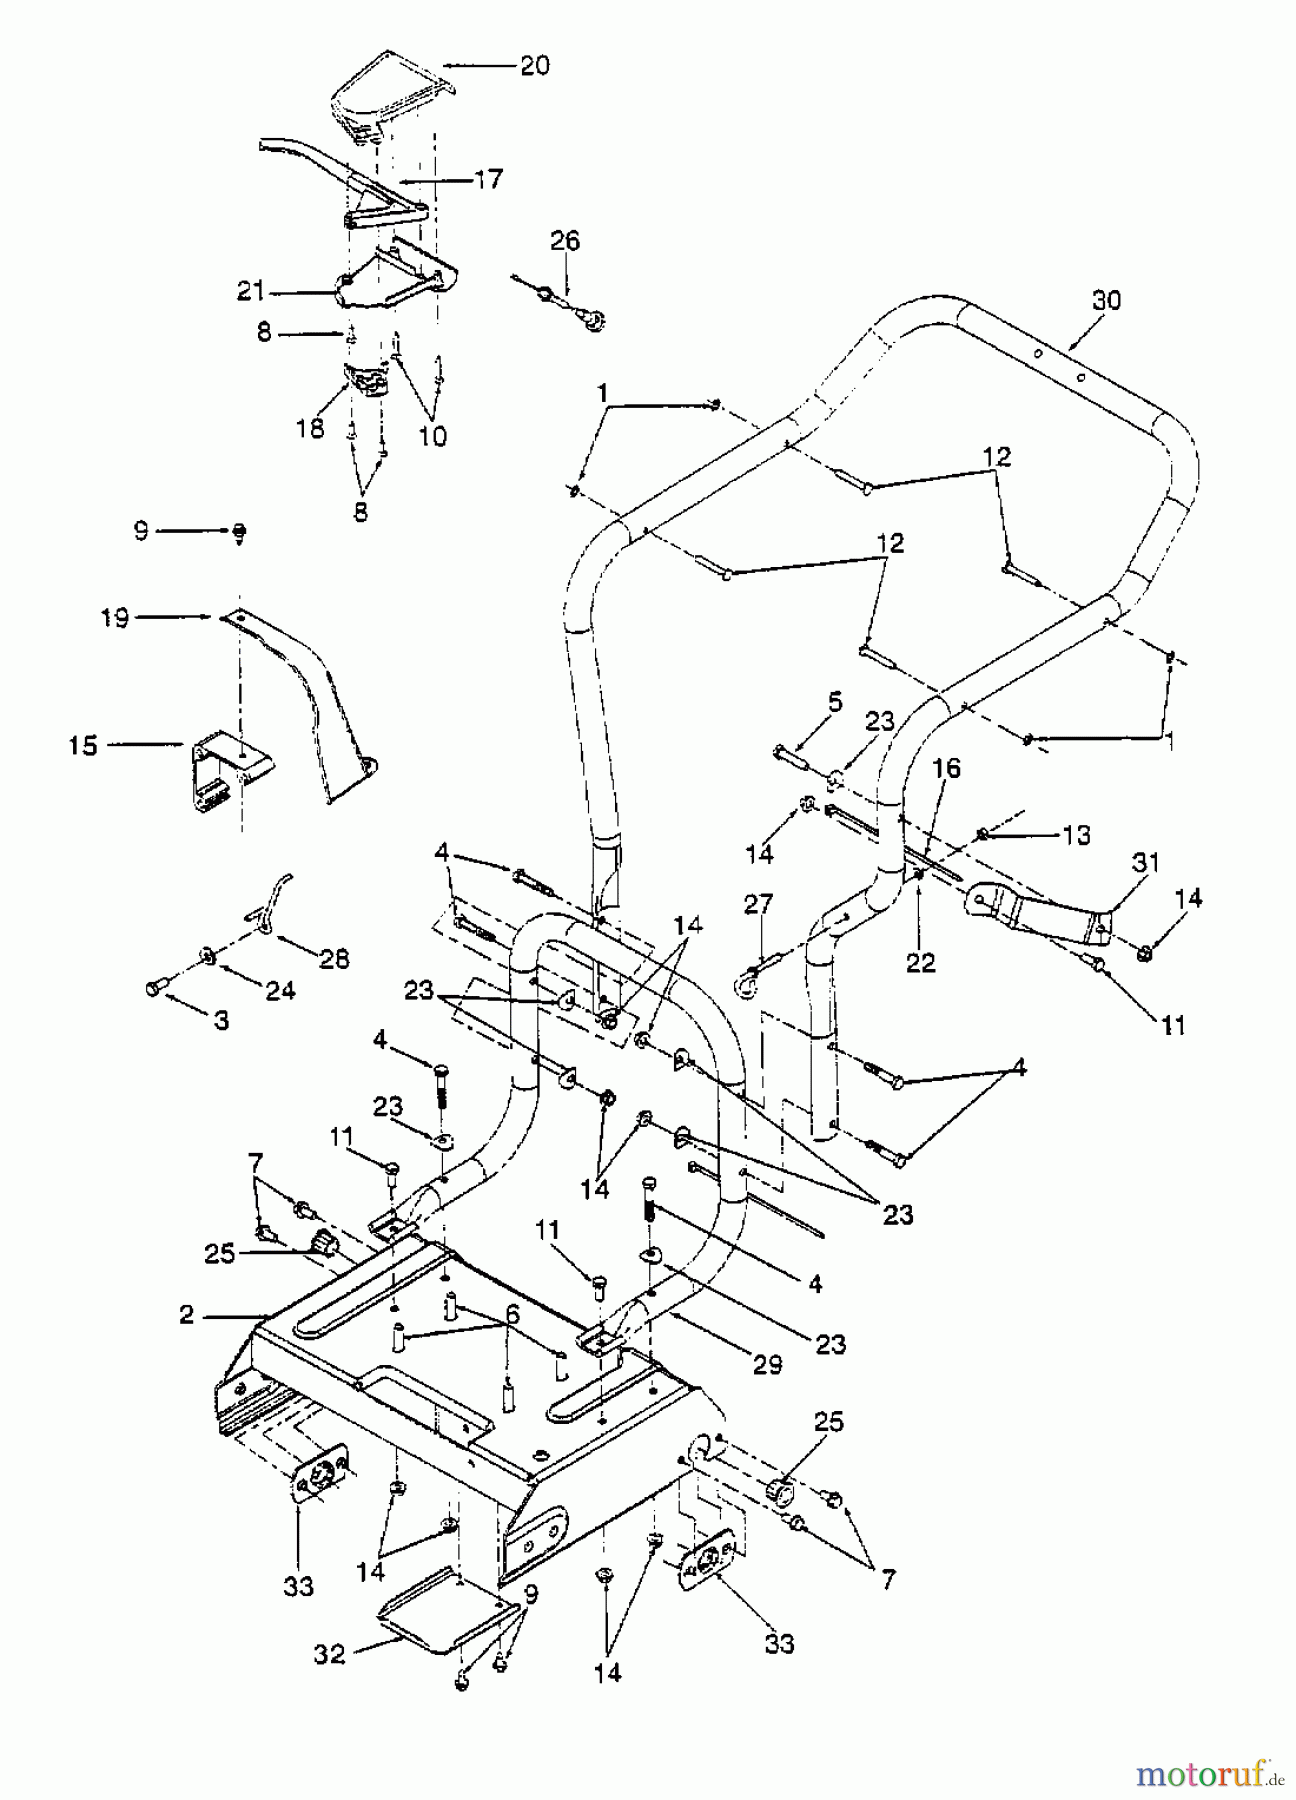  Gutbrod Leaf blower, Blower vac 203 B 24A-203B604  (1998) Handle